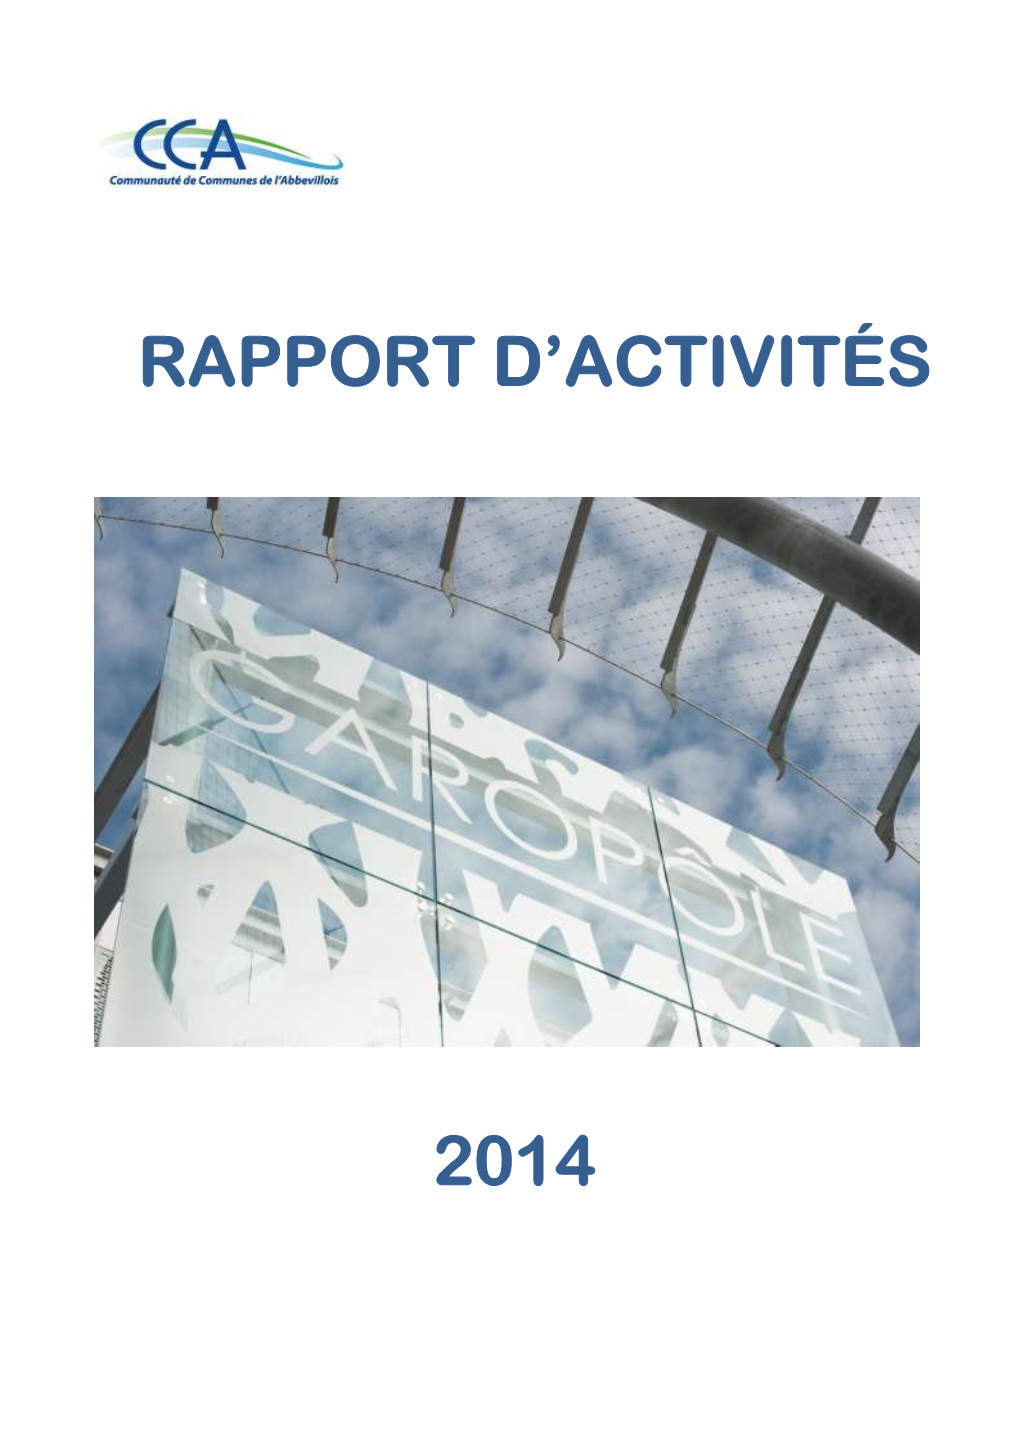 2014 Rapport D'activités